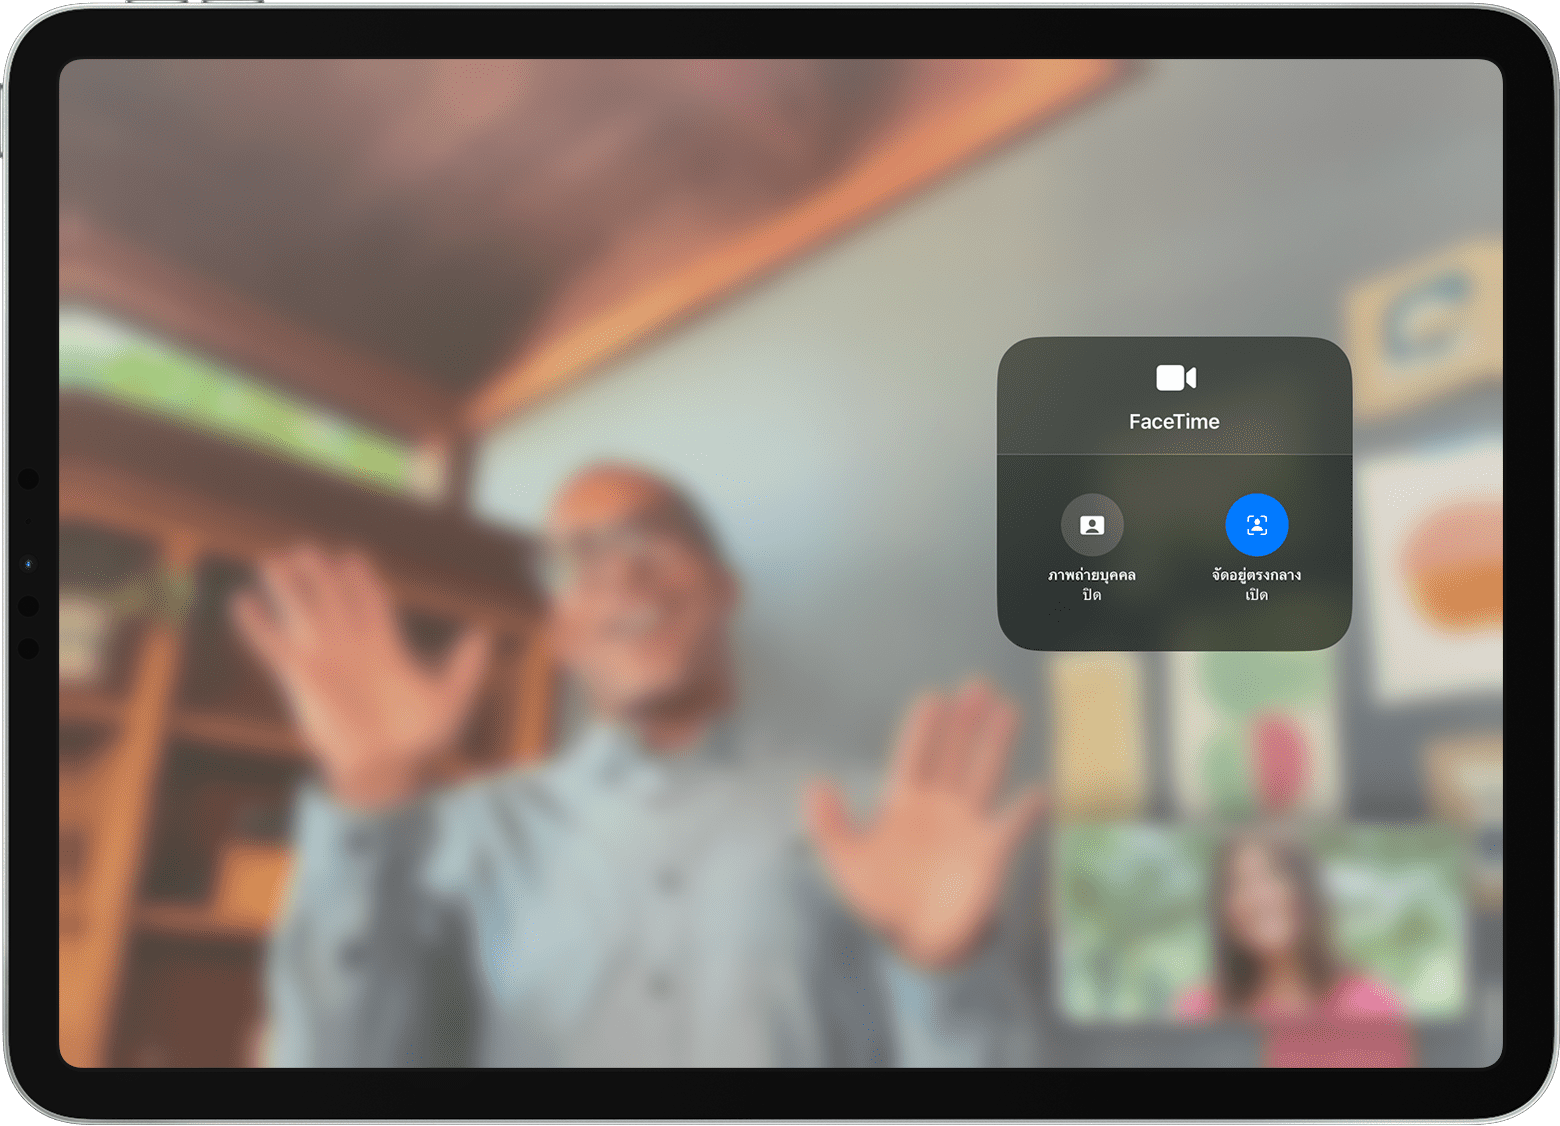 หน้าจอ iPad ที่แสดงการโทร FaceTime โดยที่มองเห็นตัวเลือกเอฟเฟ็กต์วิดีโอด้วย